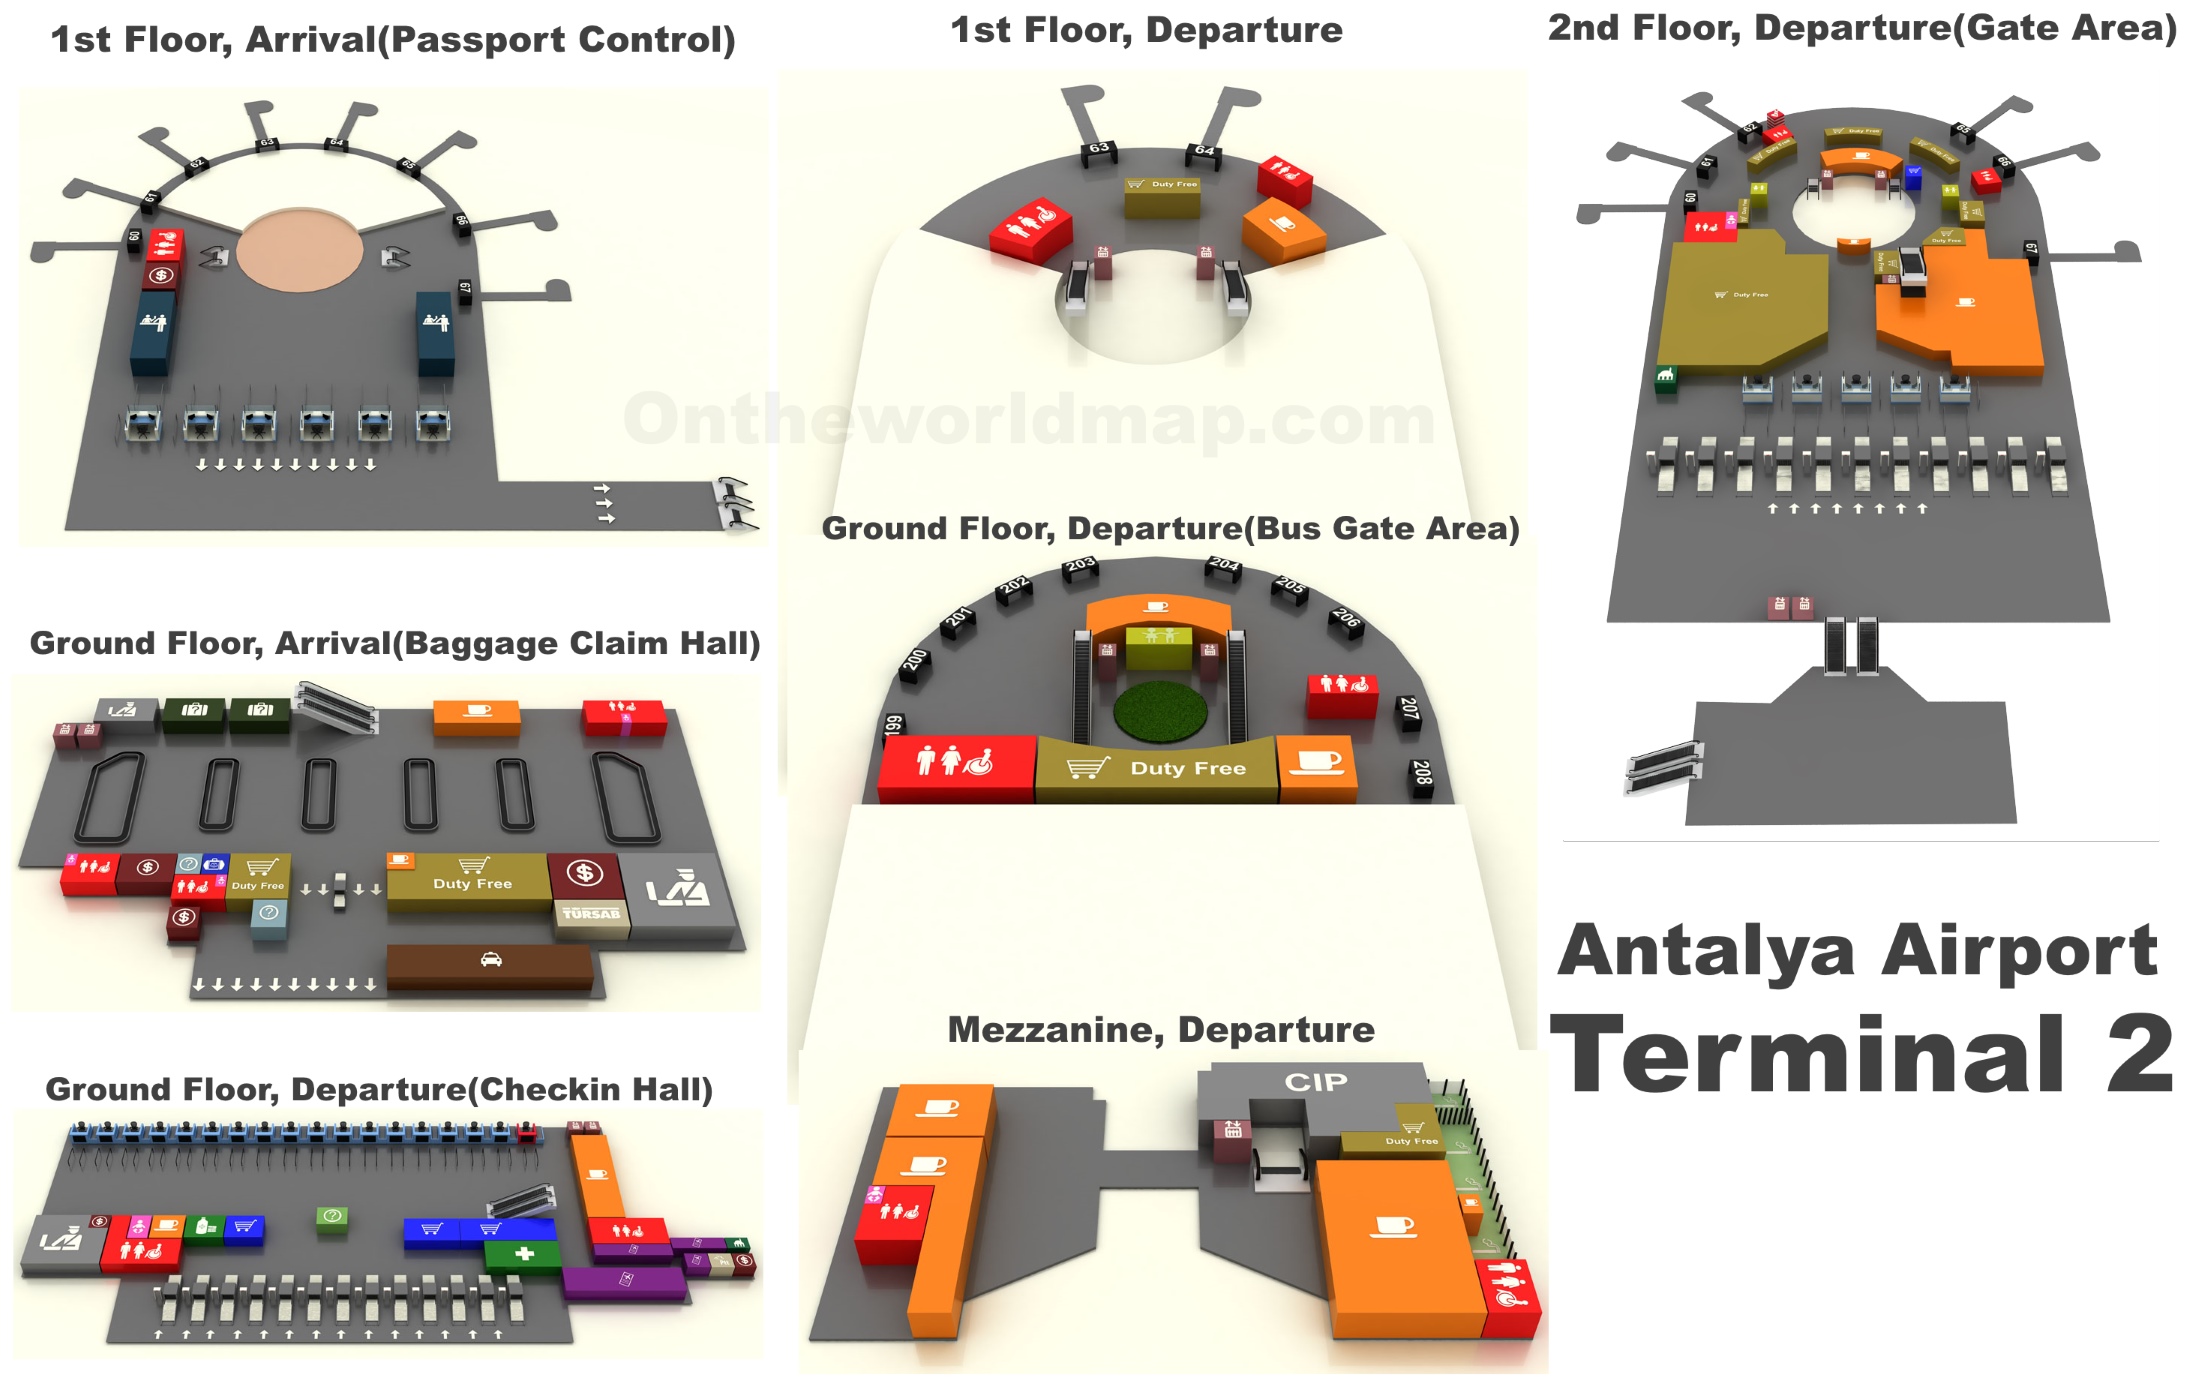 Аэропорт анталии терминал